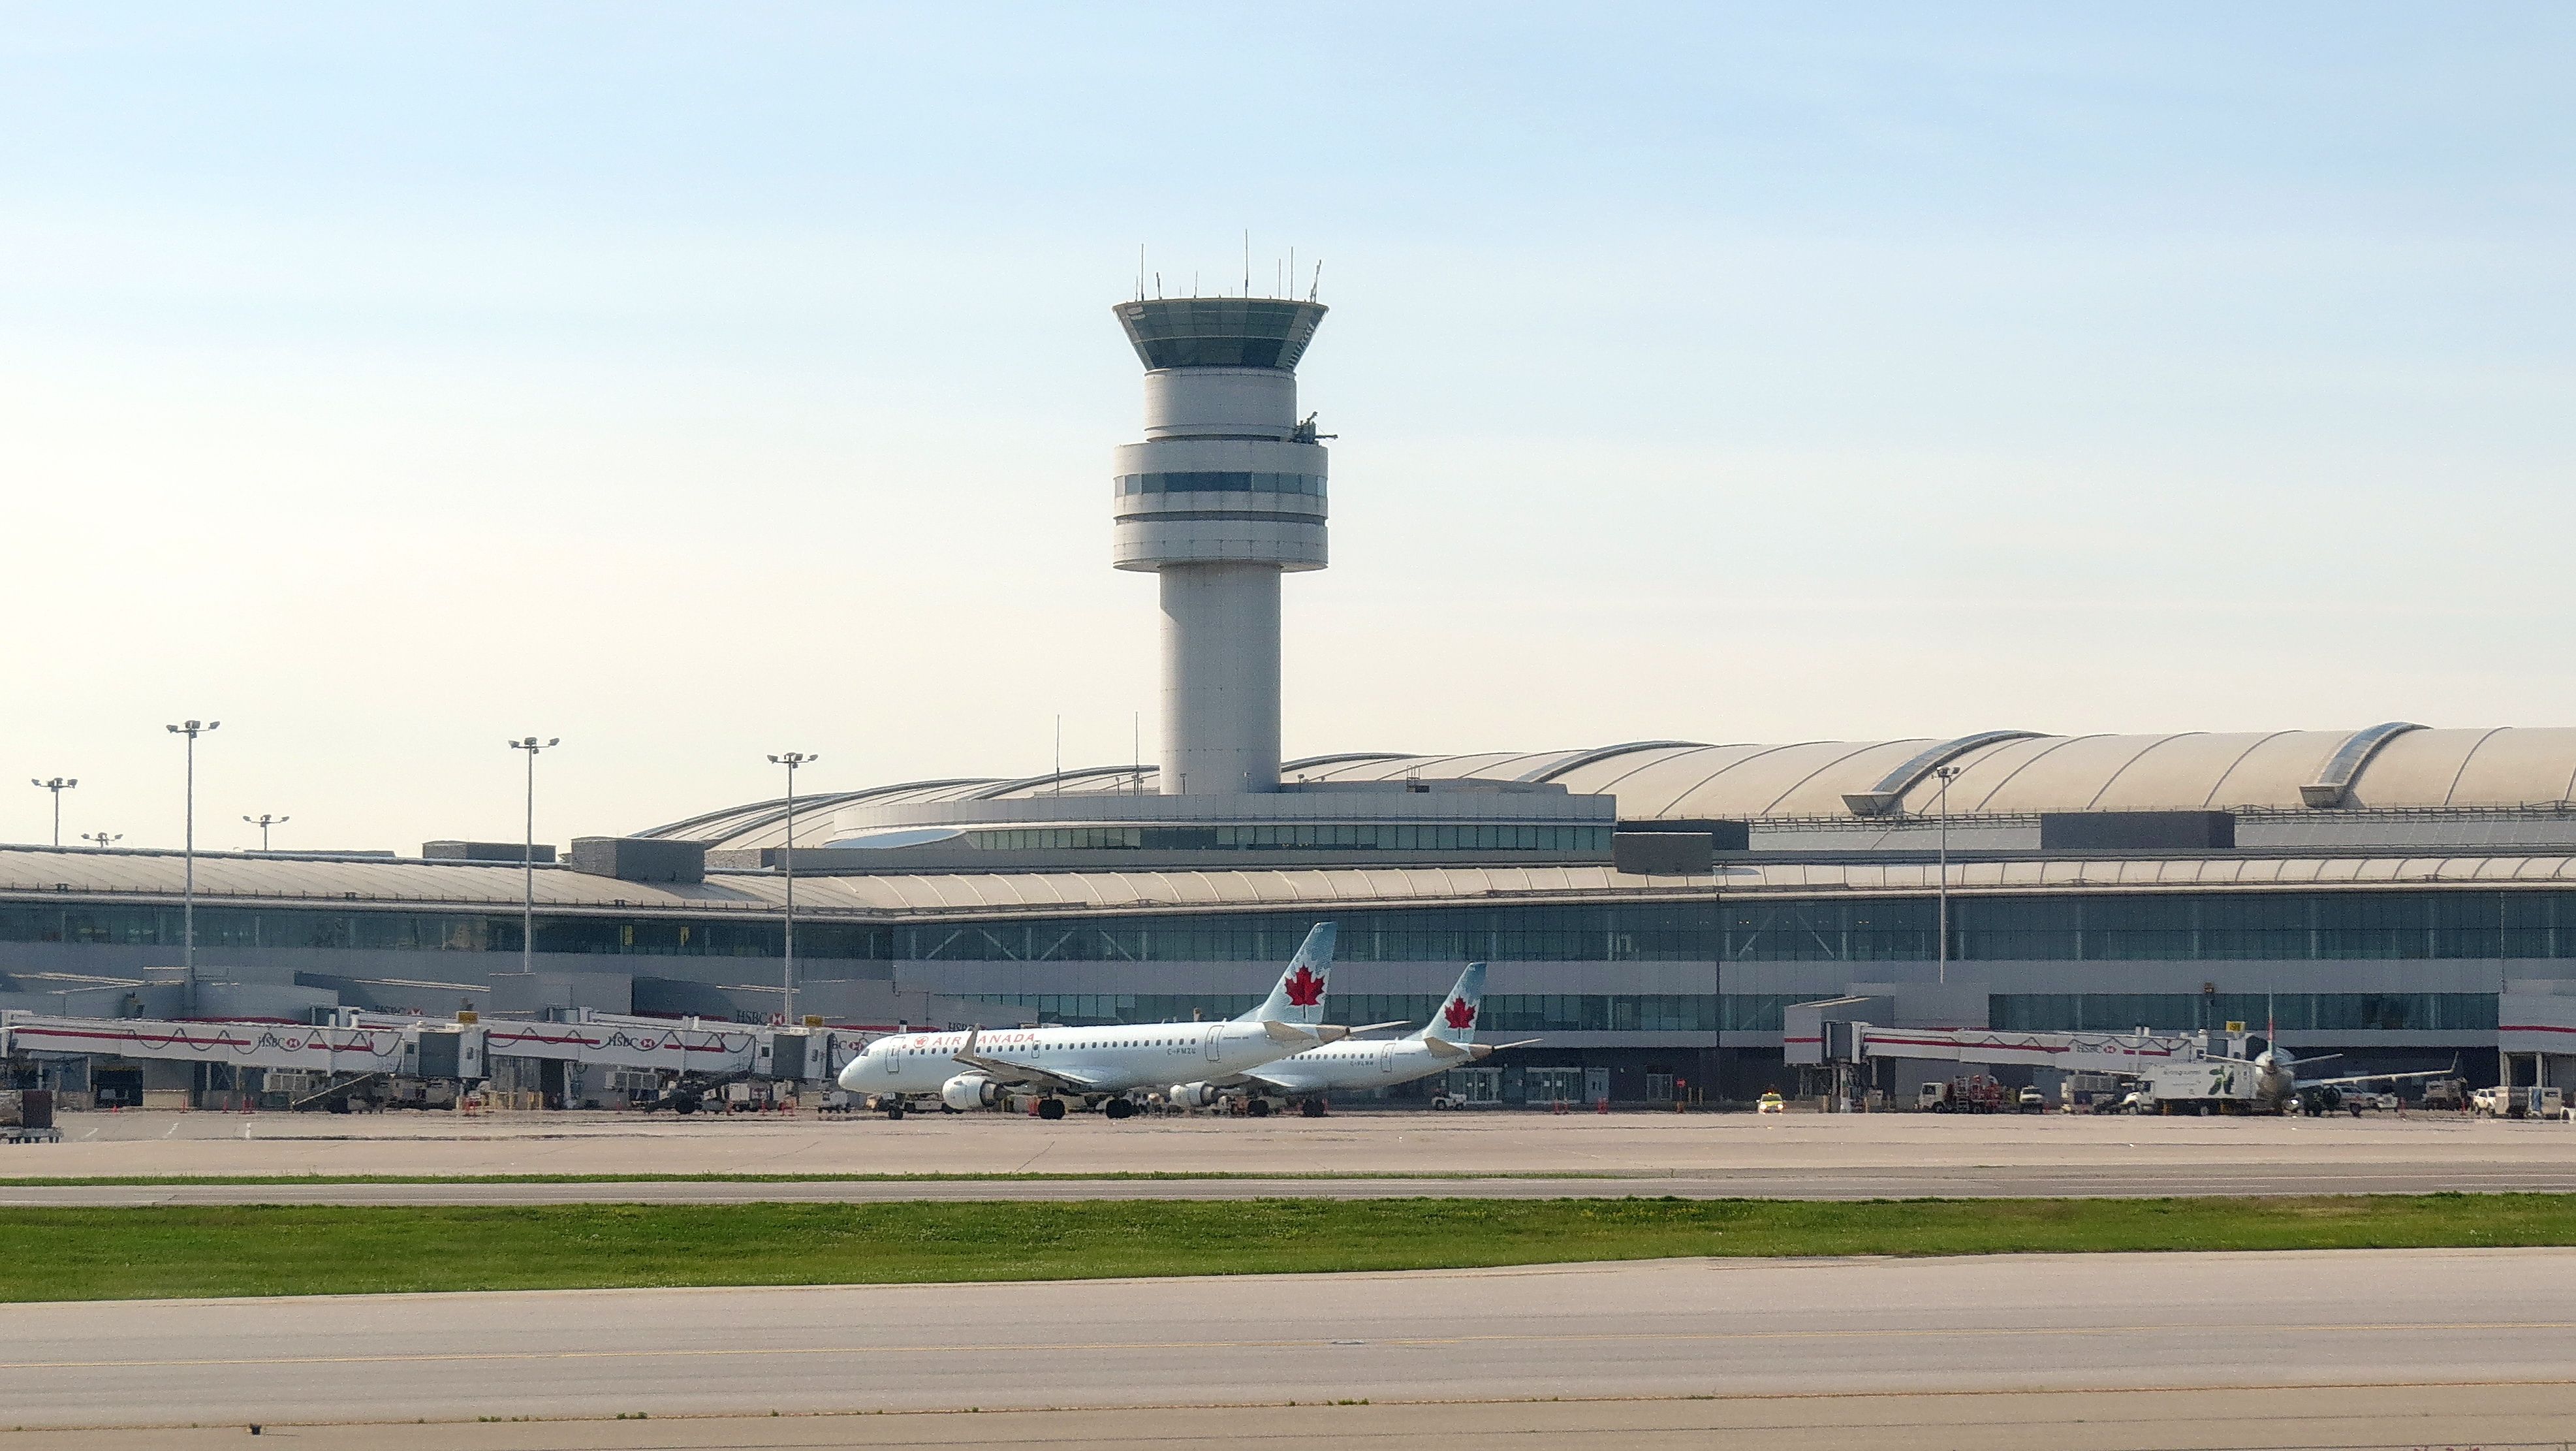 Passenger aircraft at the terminal at Toronto Pearson Airport